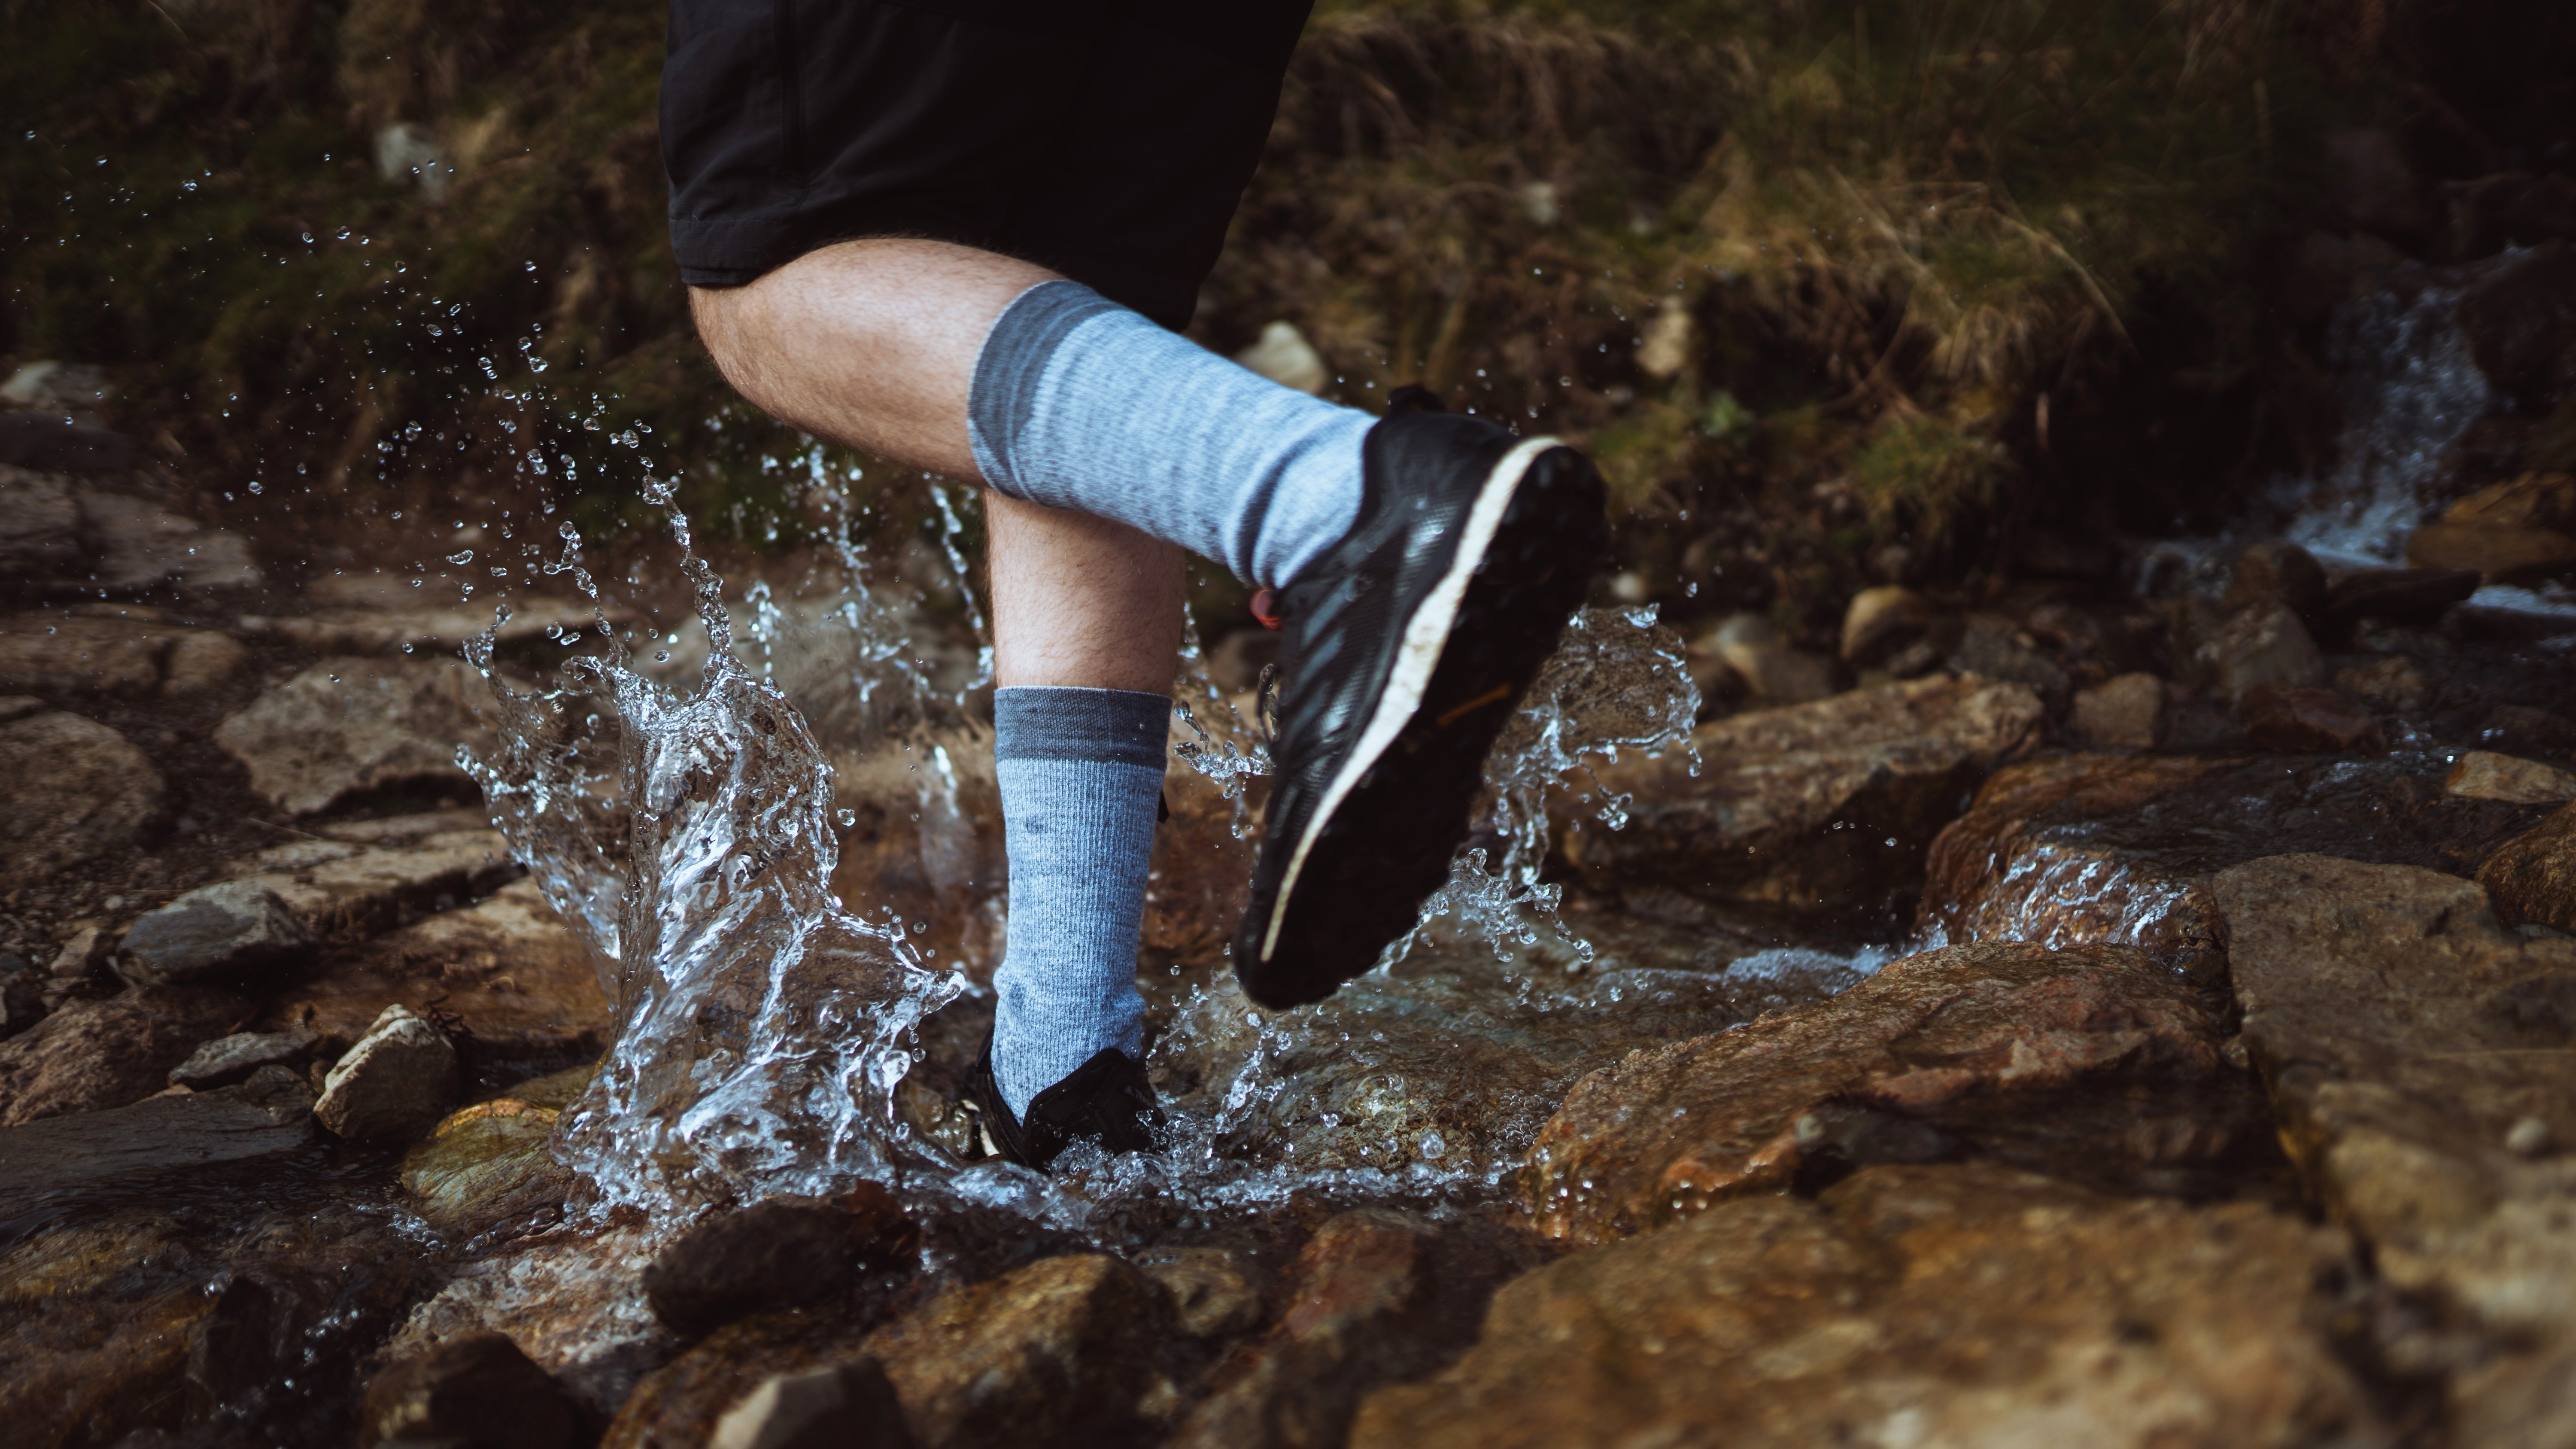 Los efectos de los calcetines mojados pueden arruinar una caminata o una caminata.